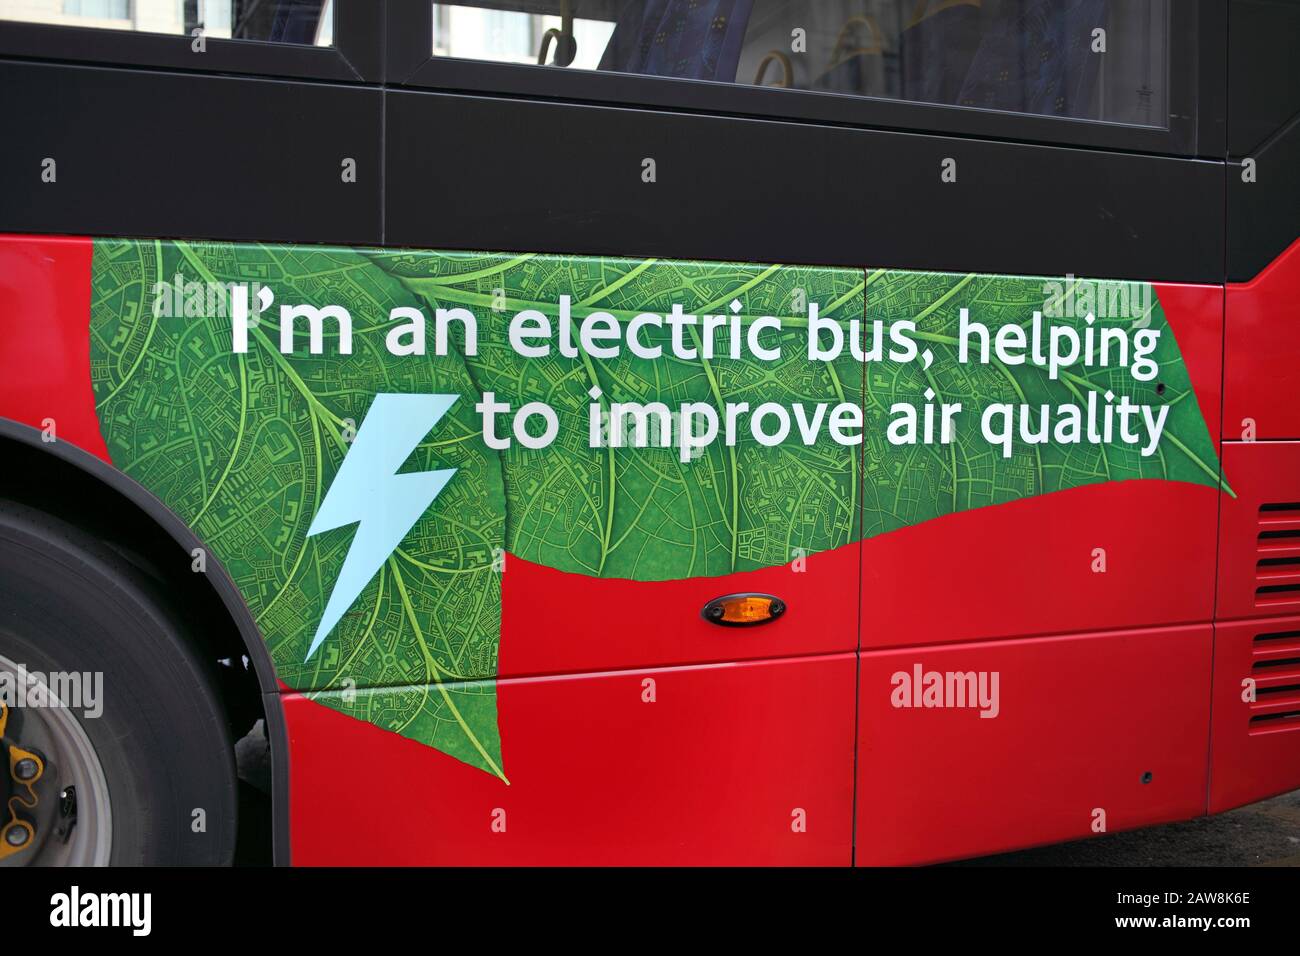 Werbung an der Seite eines elektrischen Busses in London, der seine Rolle bei der Verbesserung der Luftqualität bekannt gibt. Lancaster Place, London. Stockfoto